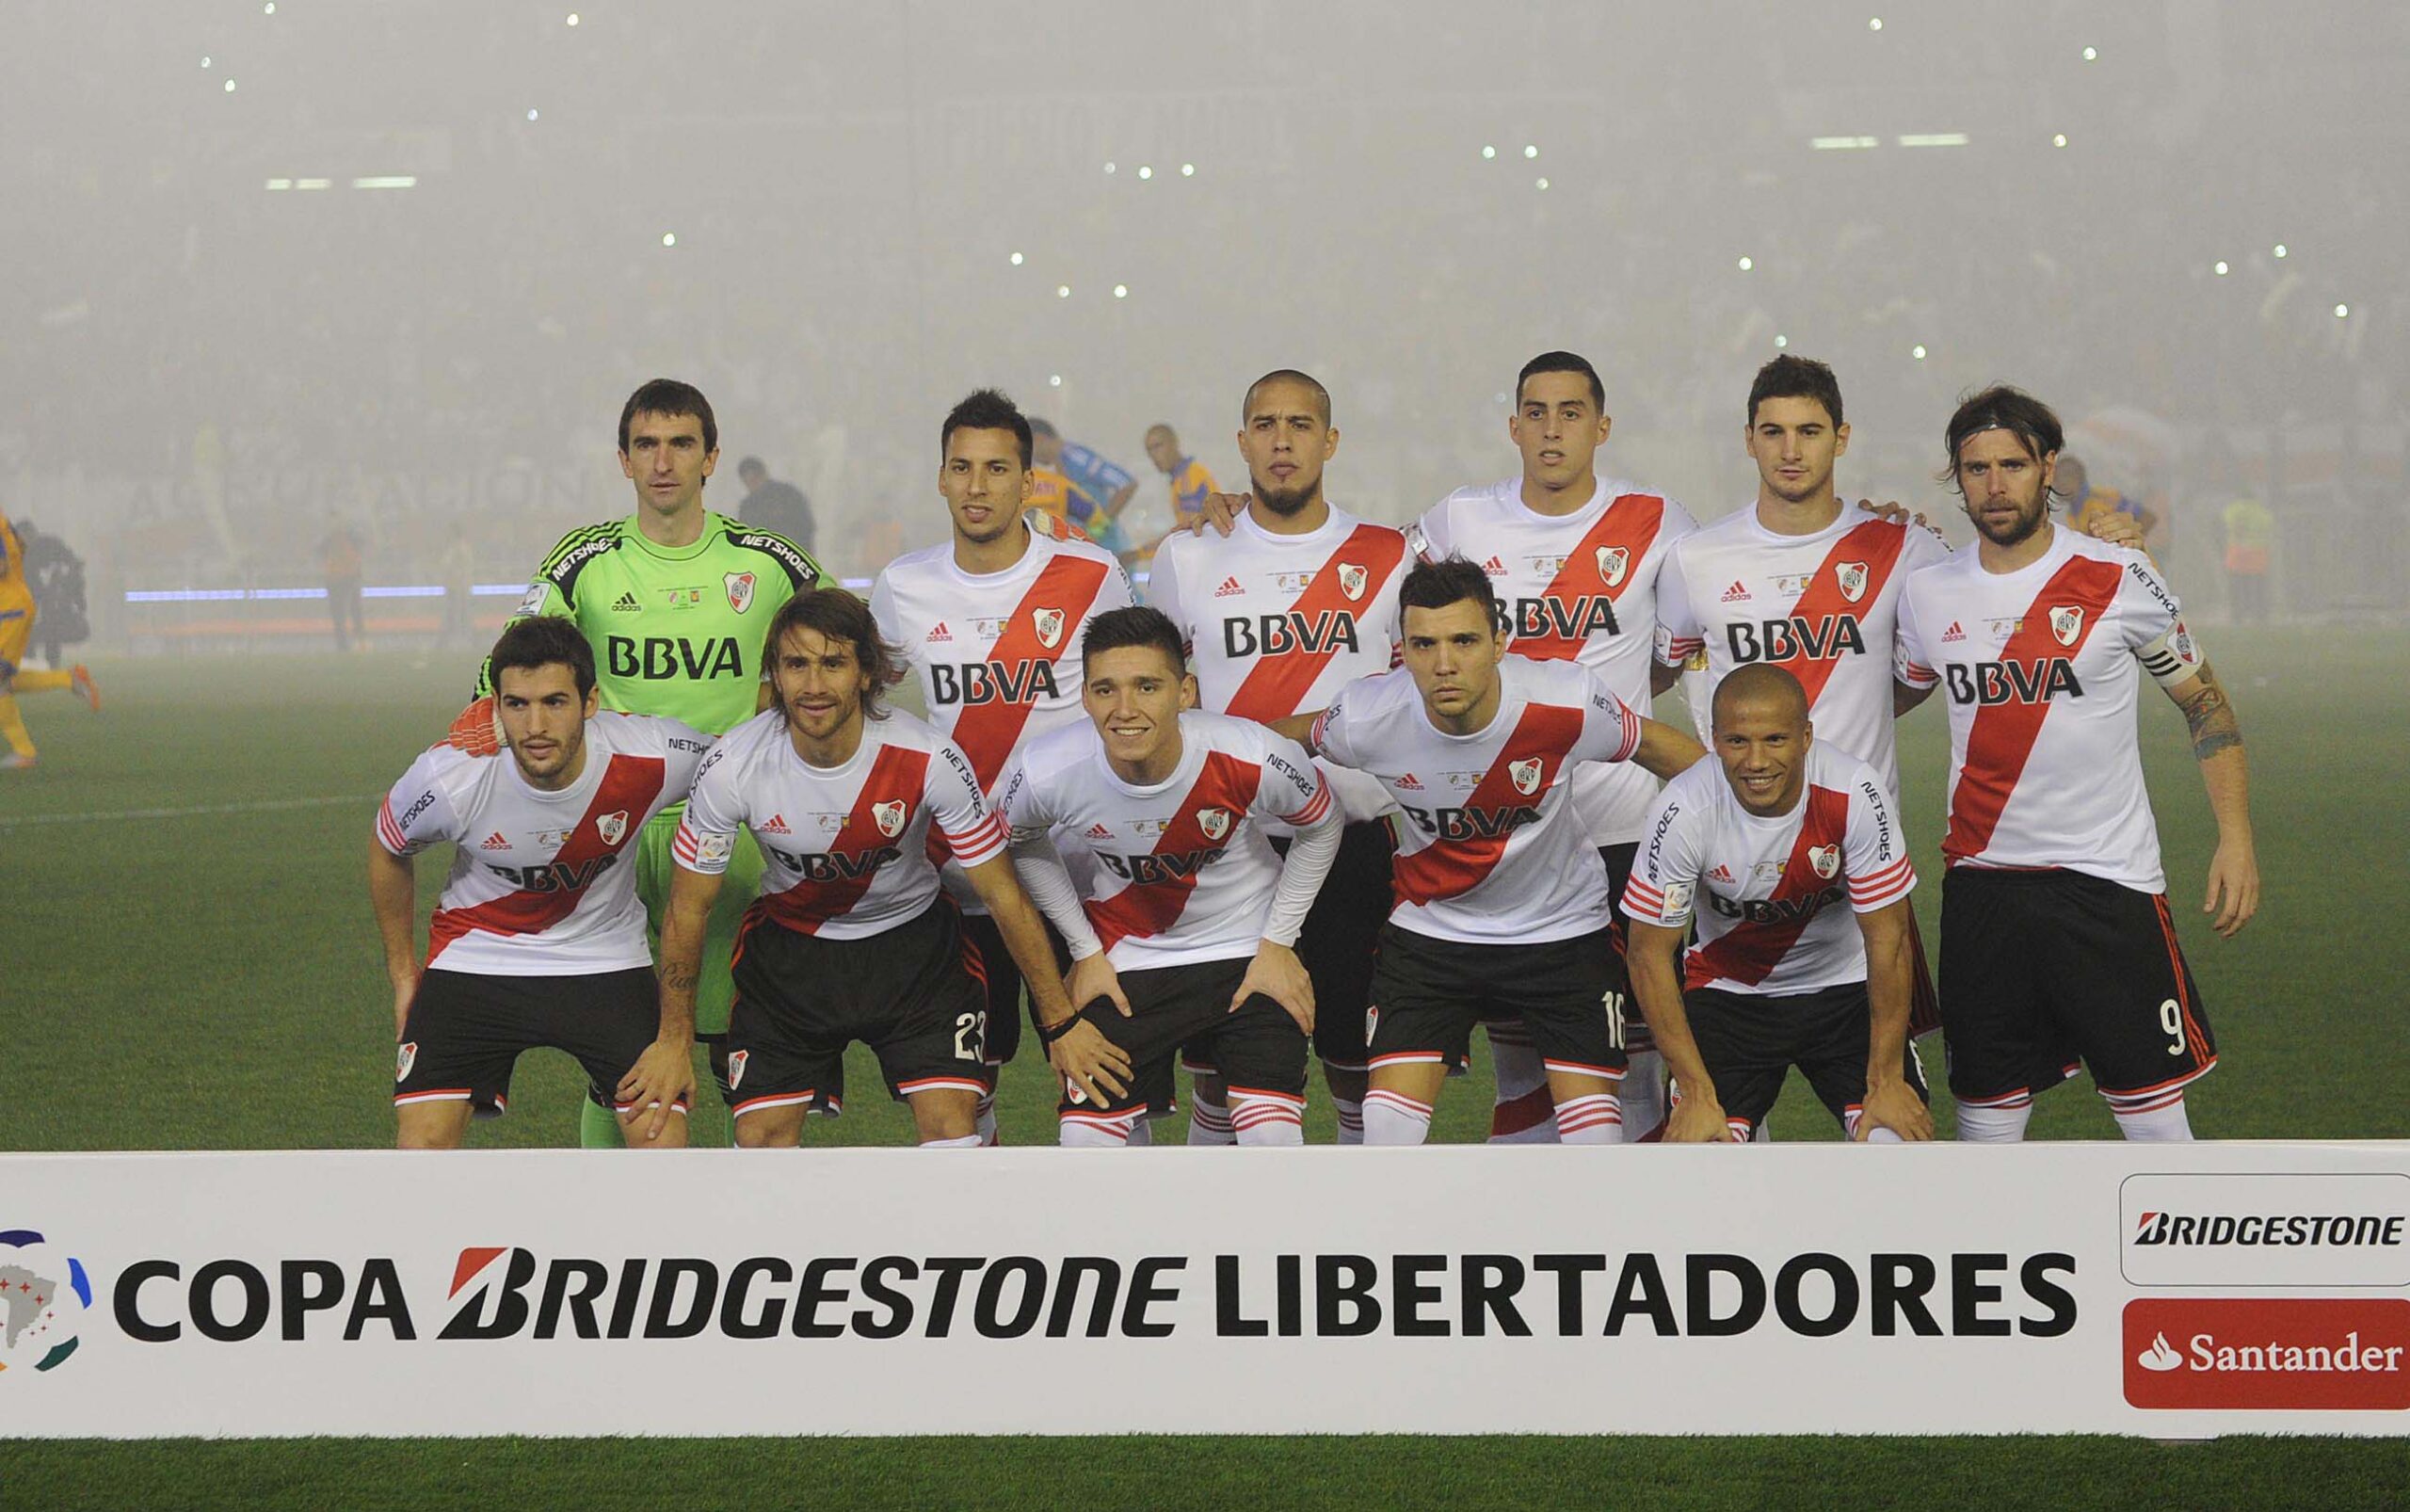 La inolvidable Copa Libertadores 2015 Recordá el River campeón a 7